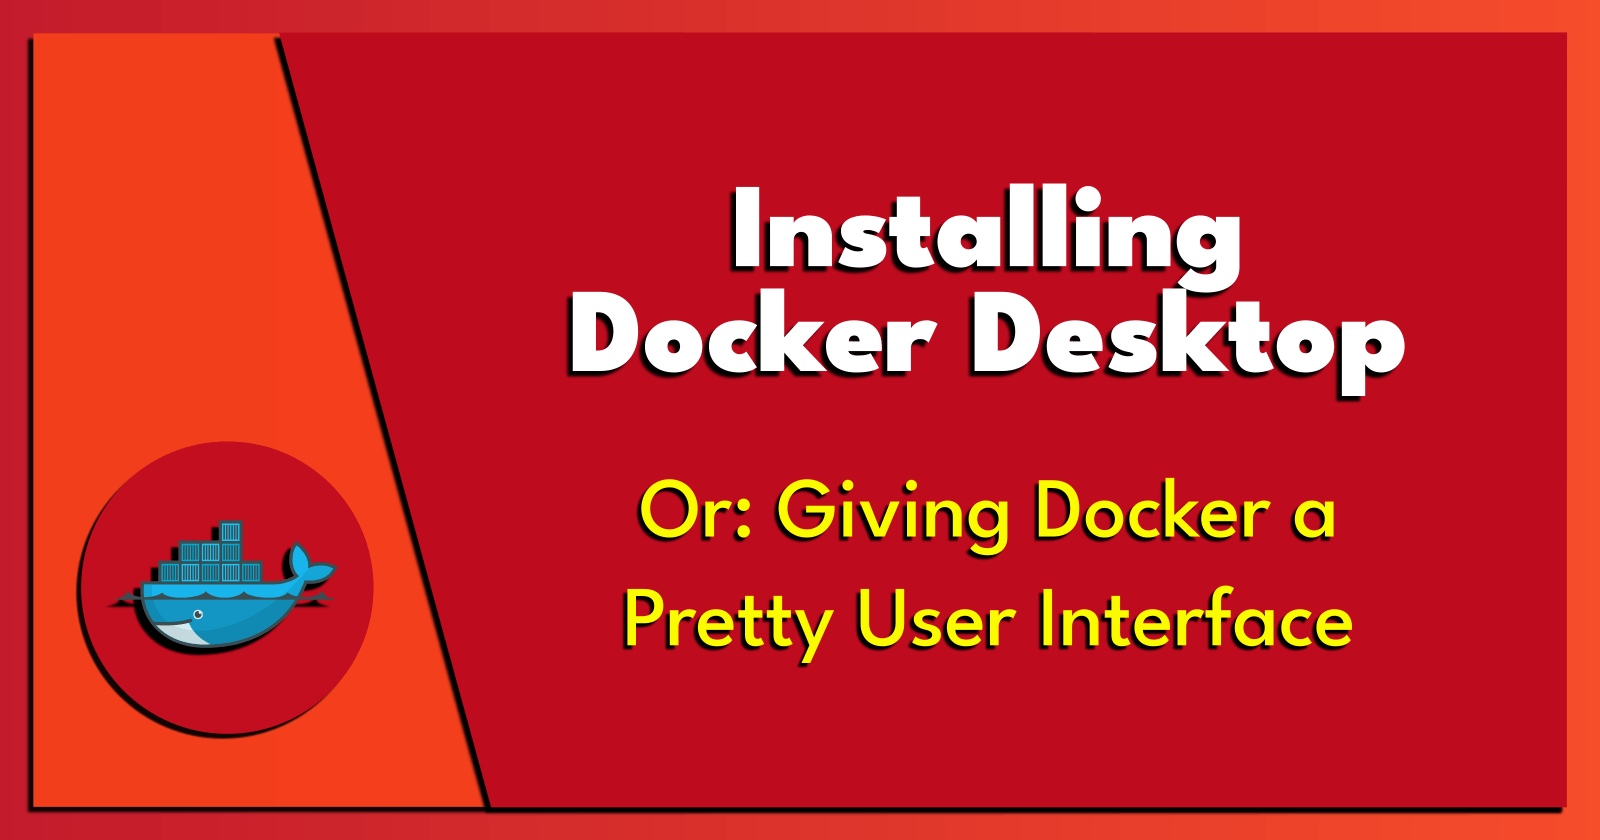 Installing Docker Desktop.